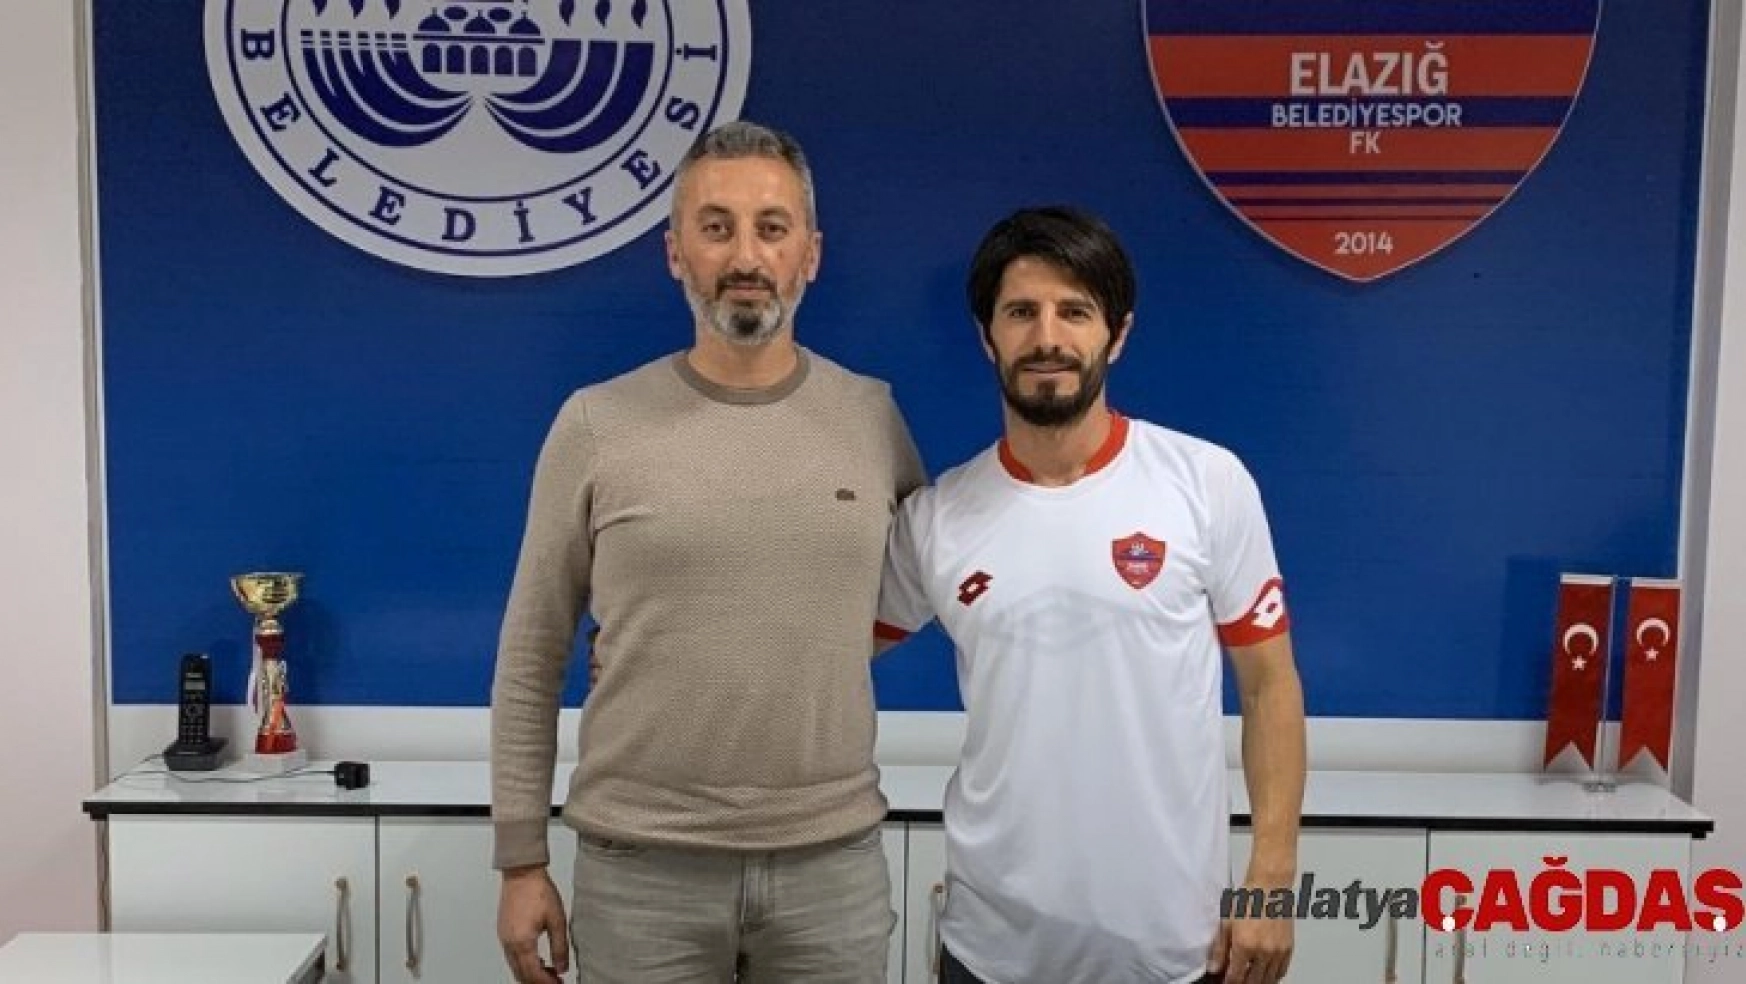 Elazığ Belediyespor, Emrah Çalışlar ile 1,5 yıllık sözleşme imzaladı